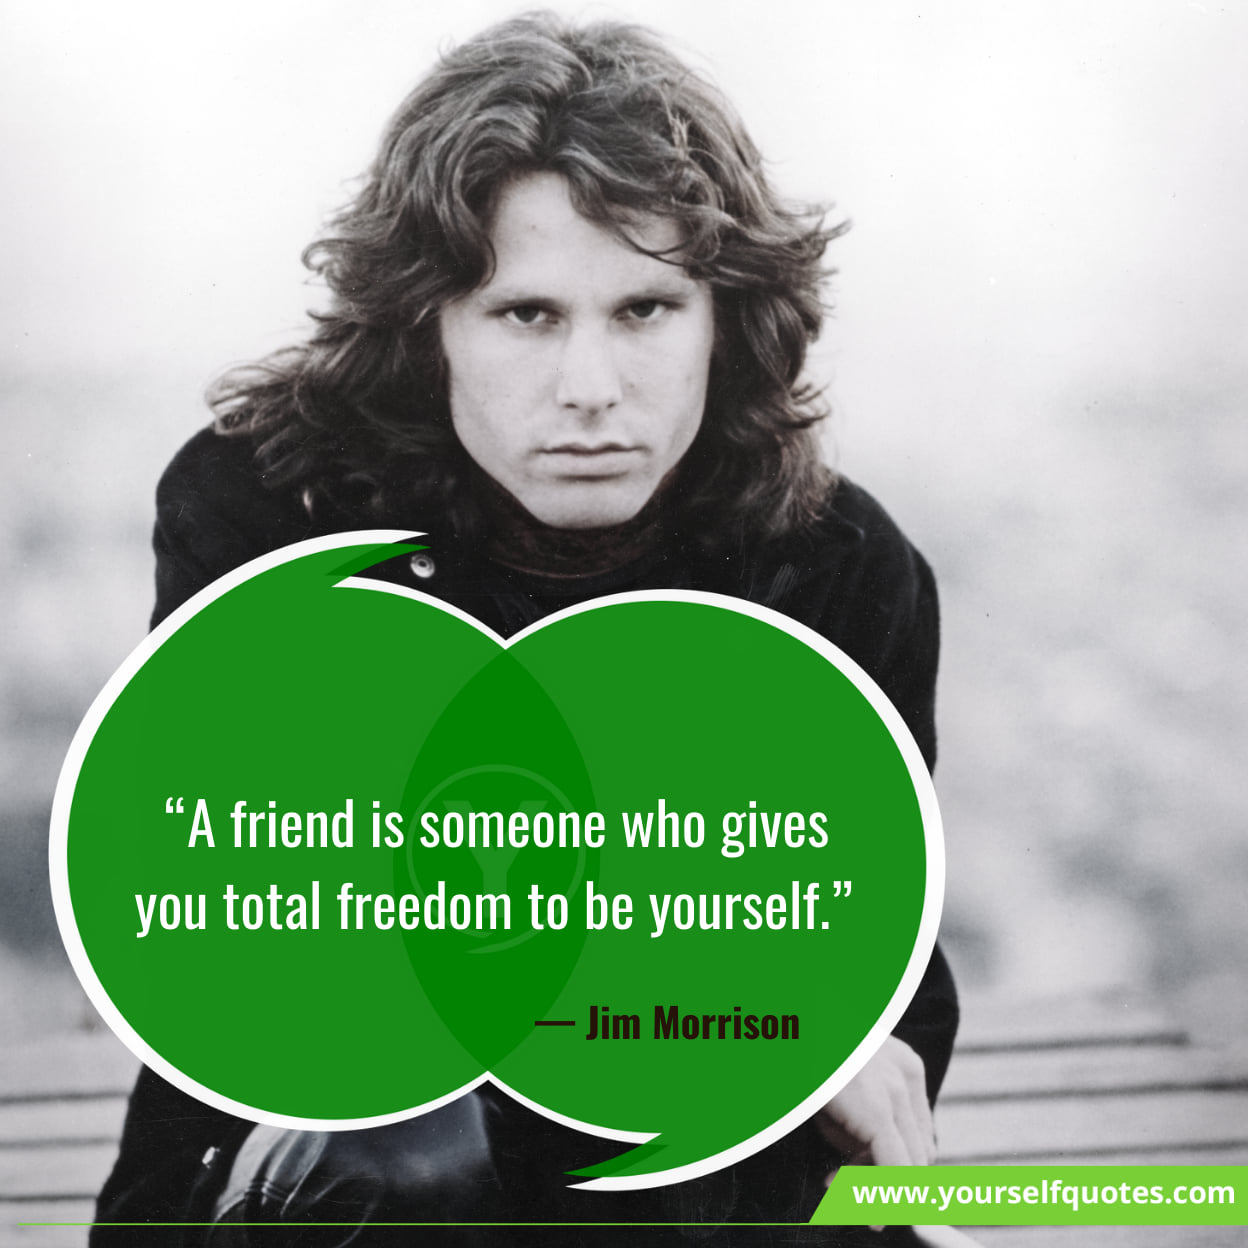 Jim Morrison Quotes About Friendship